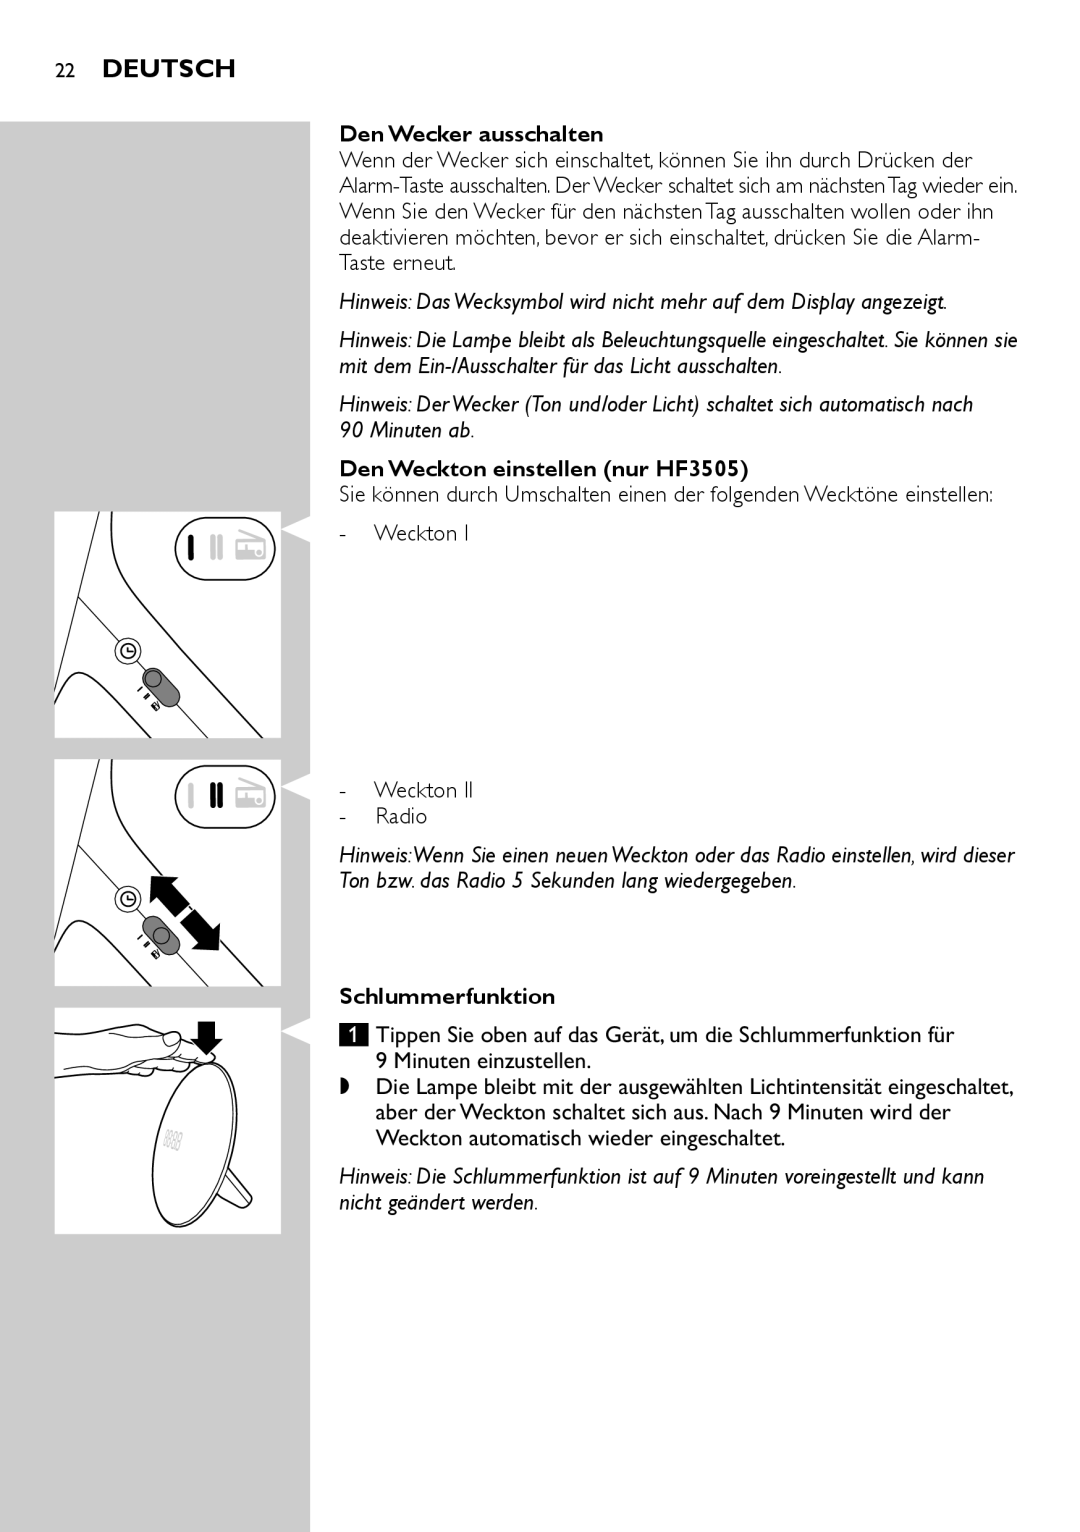 Philips HF3500 manual Deutsch, Den Wecker ausschalten, Den Weckton einstellen nur HF3505, Schlummerfunktion 